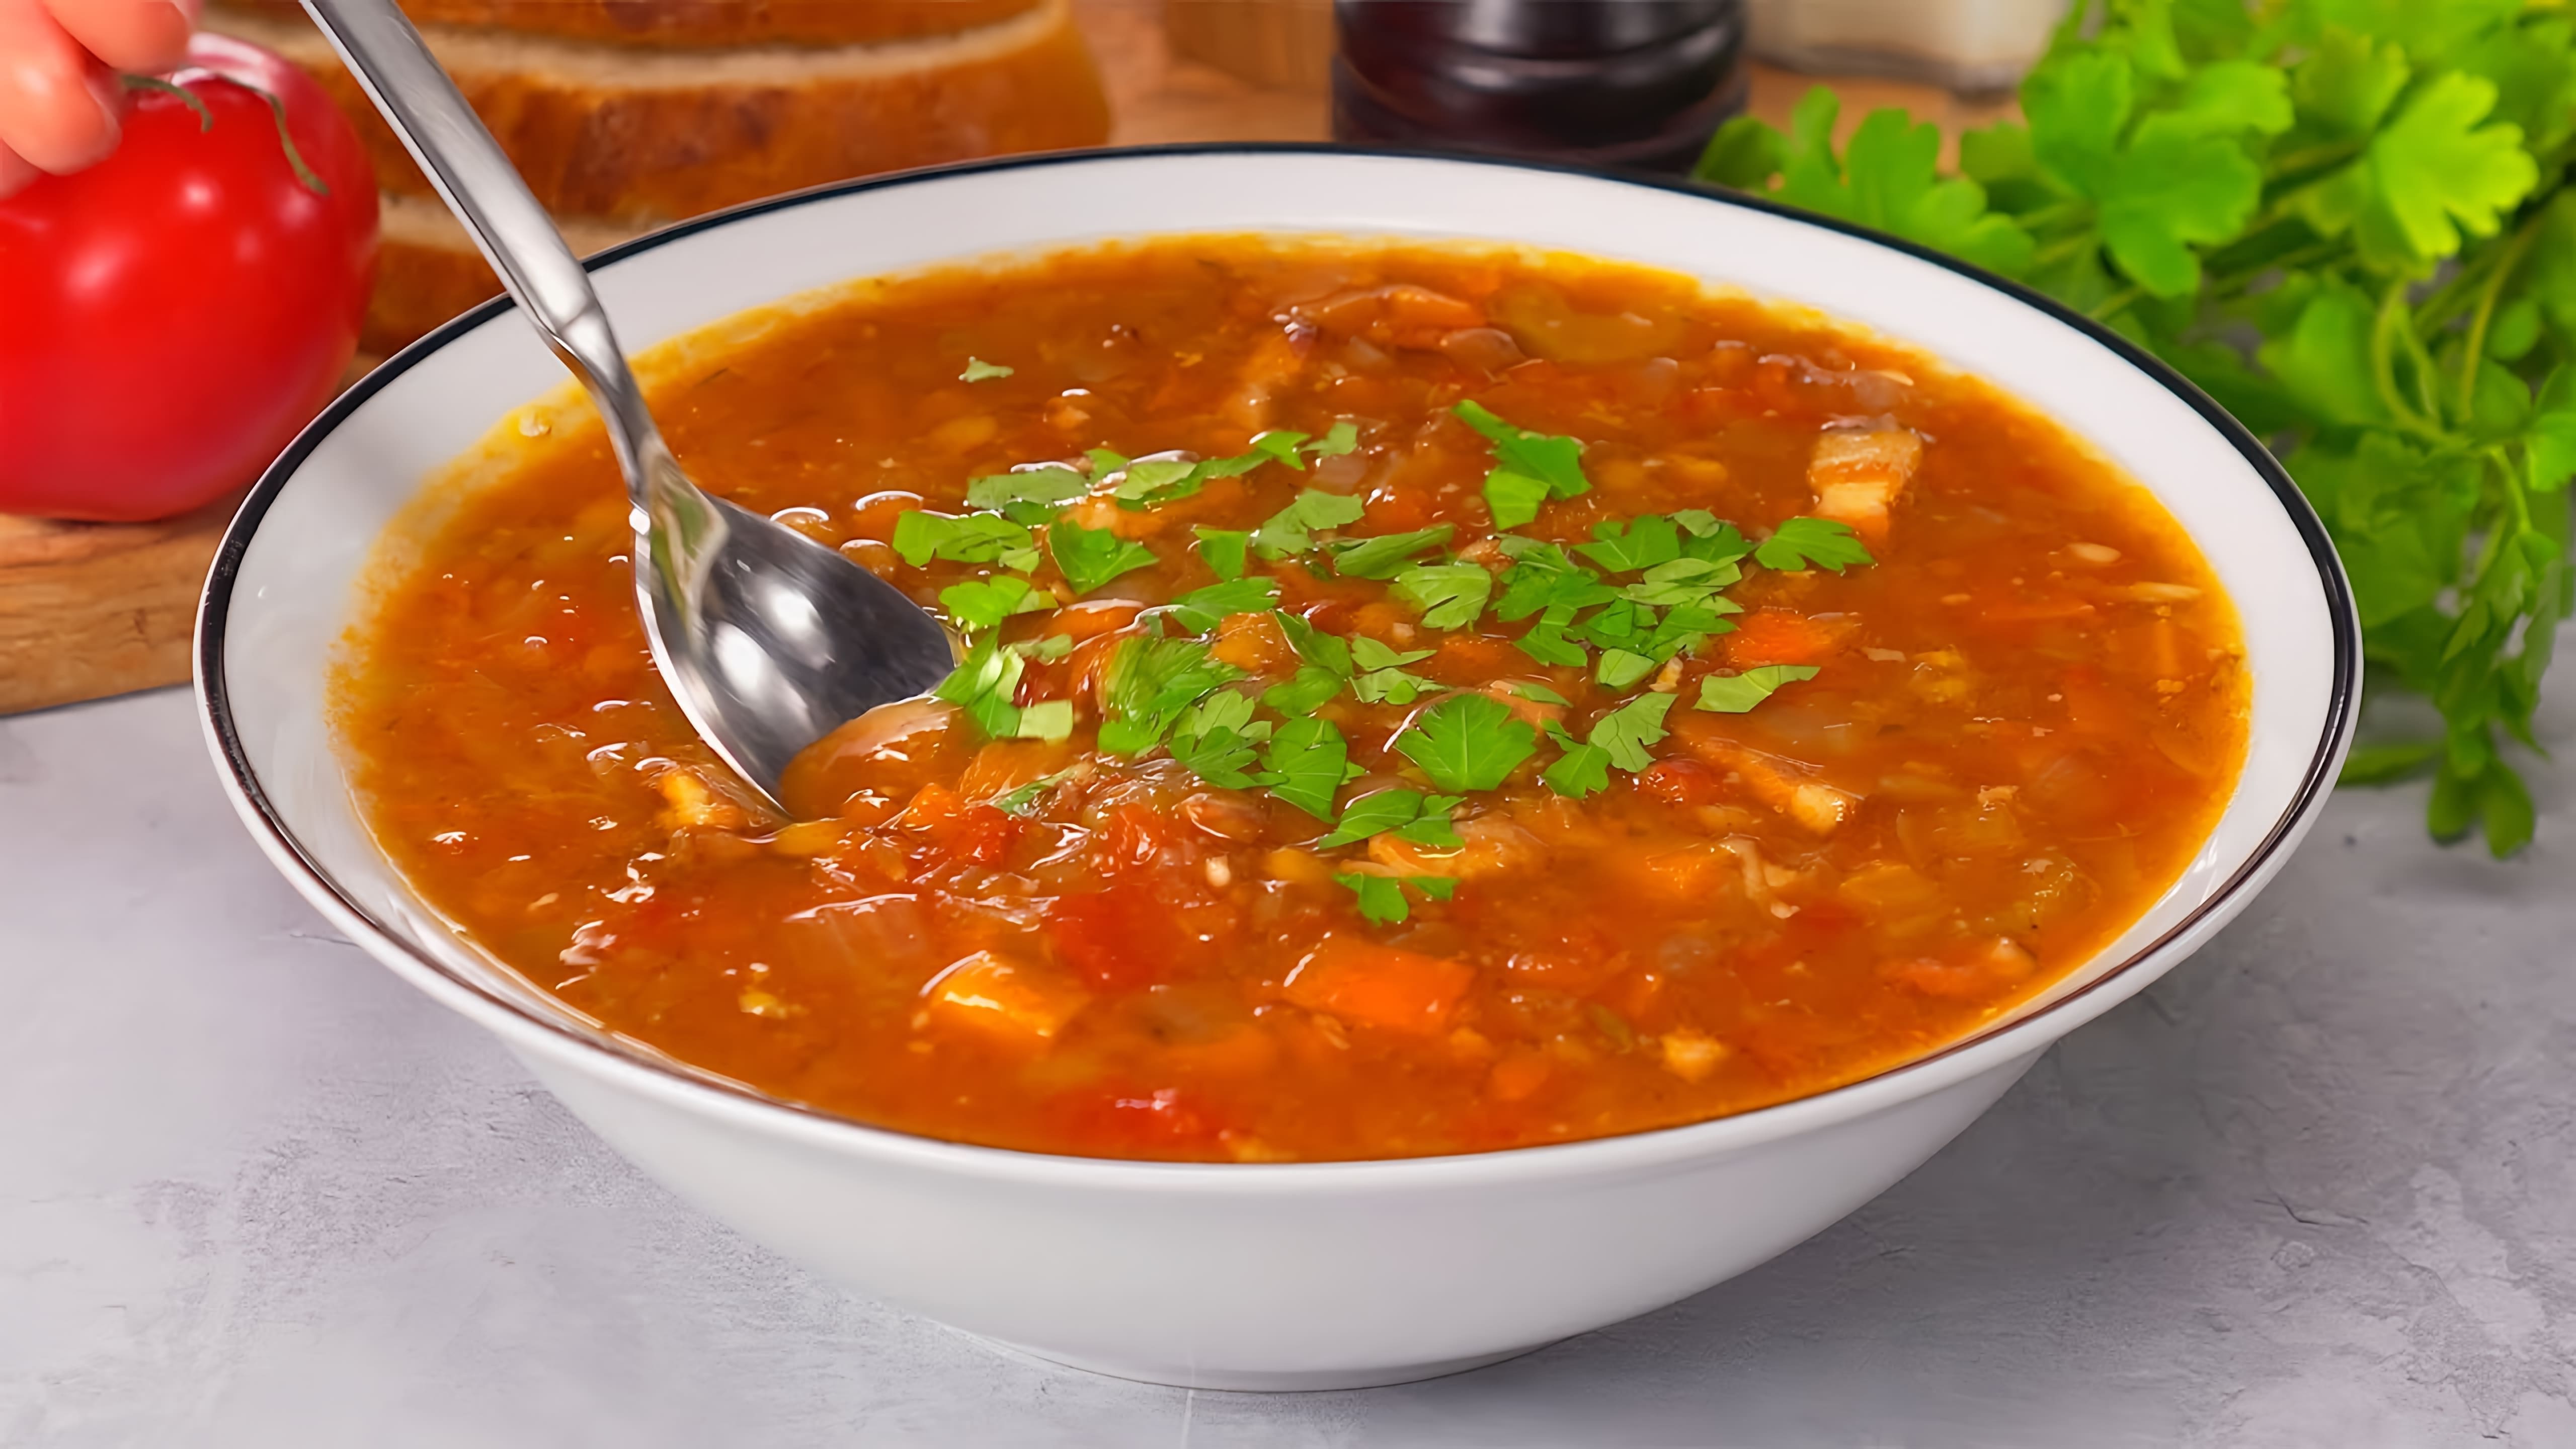 В данном видео демонстрируется рецепт приготовления превосходного супа из зеленой чечевицы